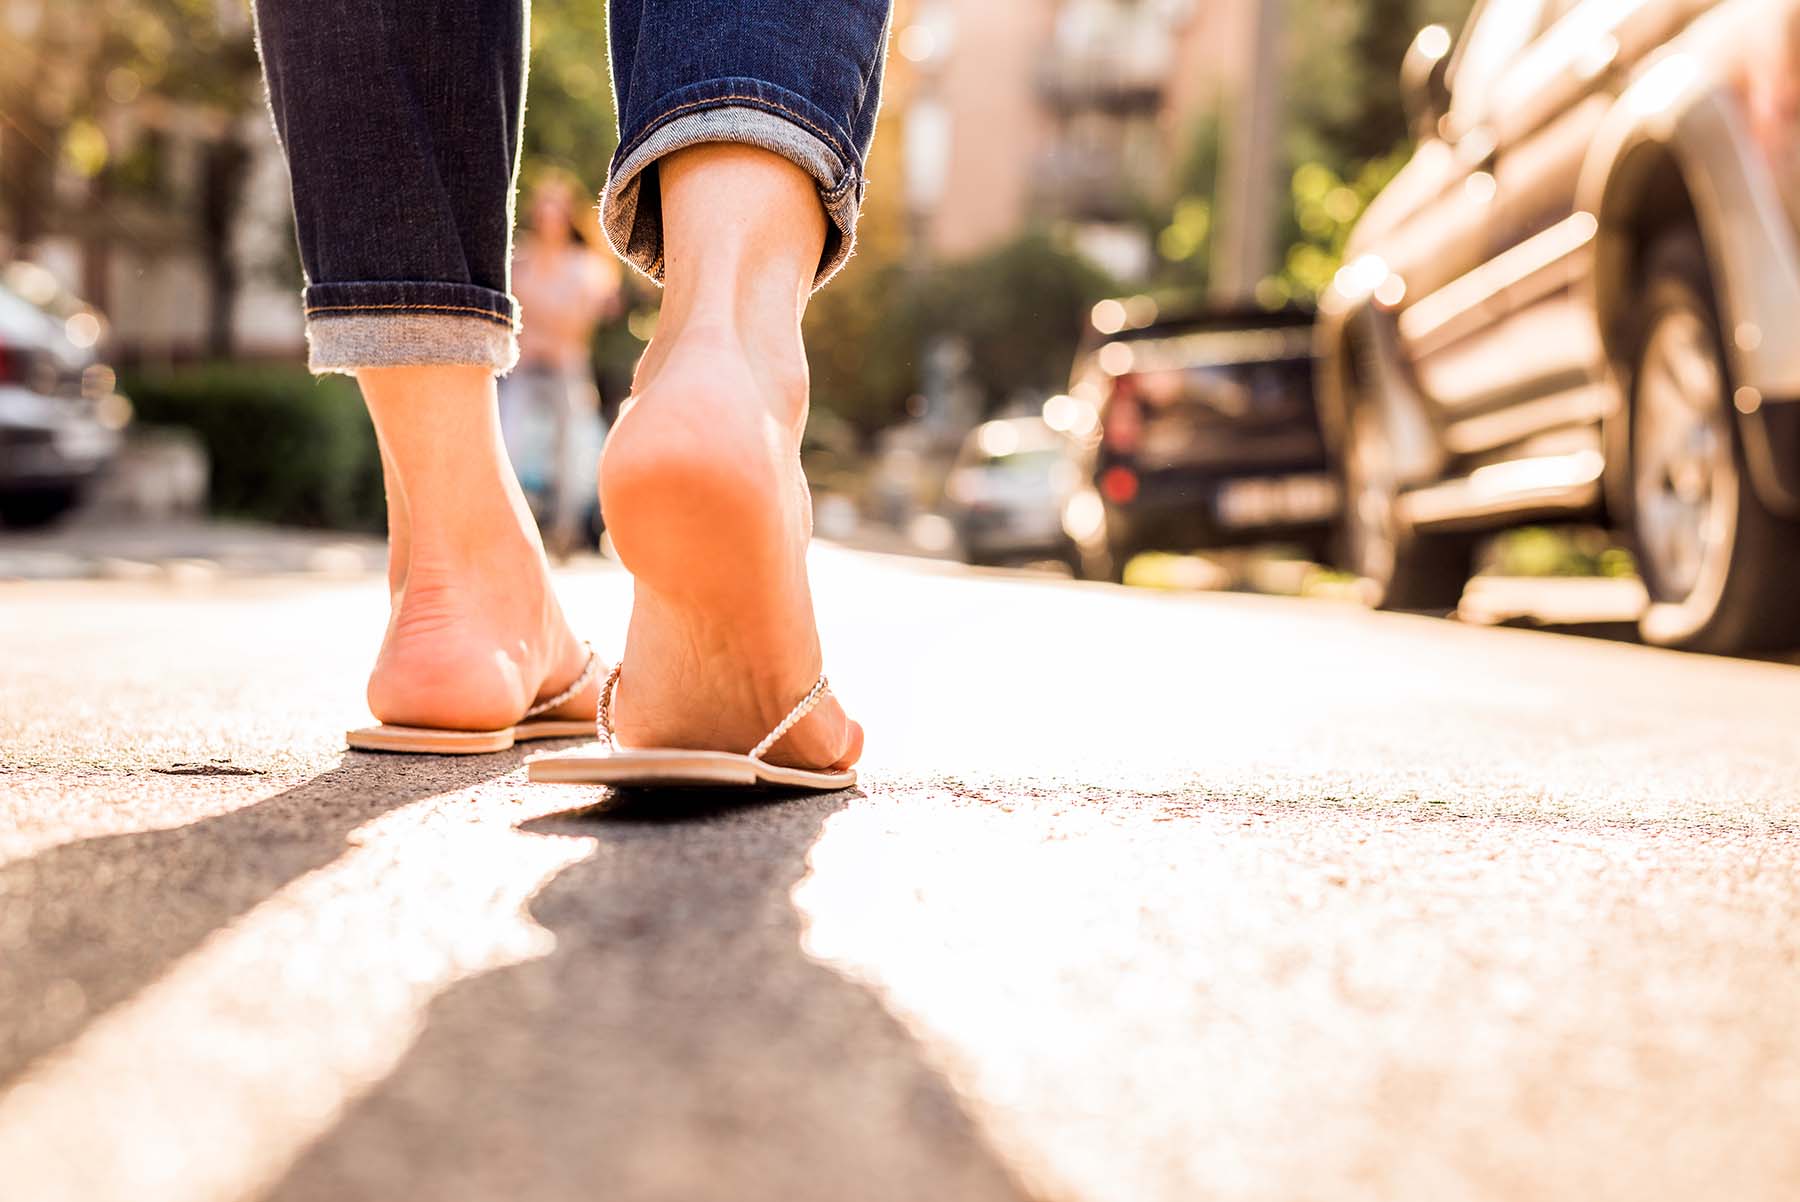 A woman wears flip flops walking down street.